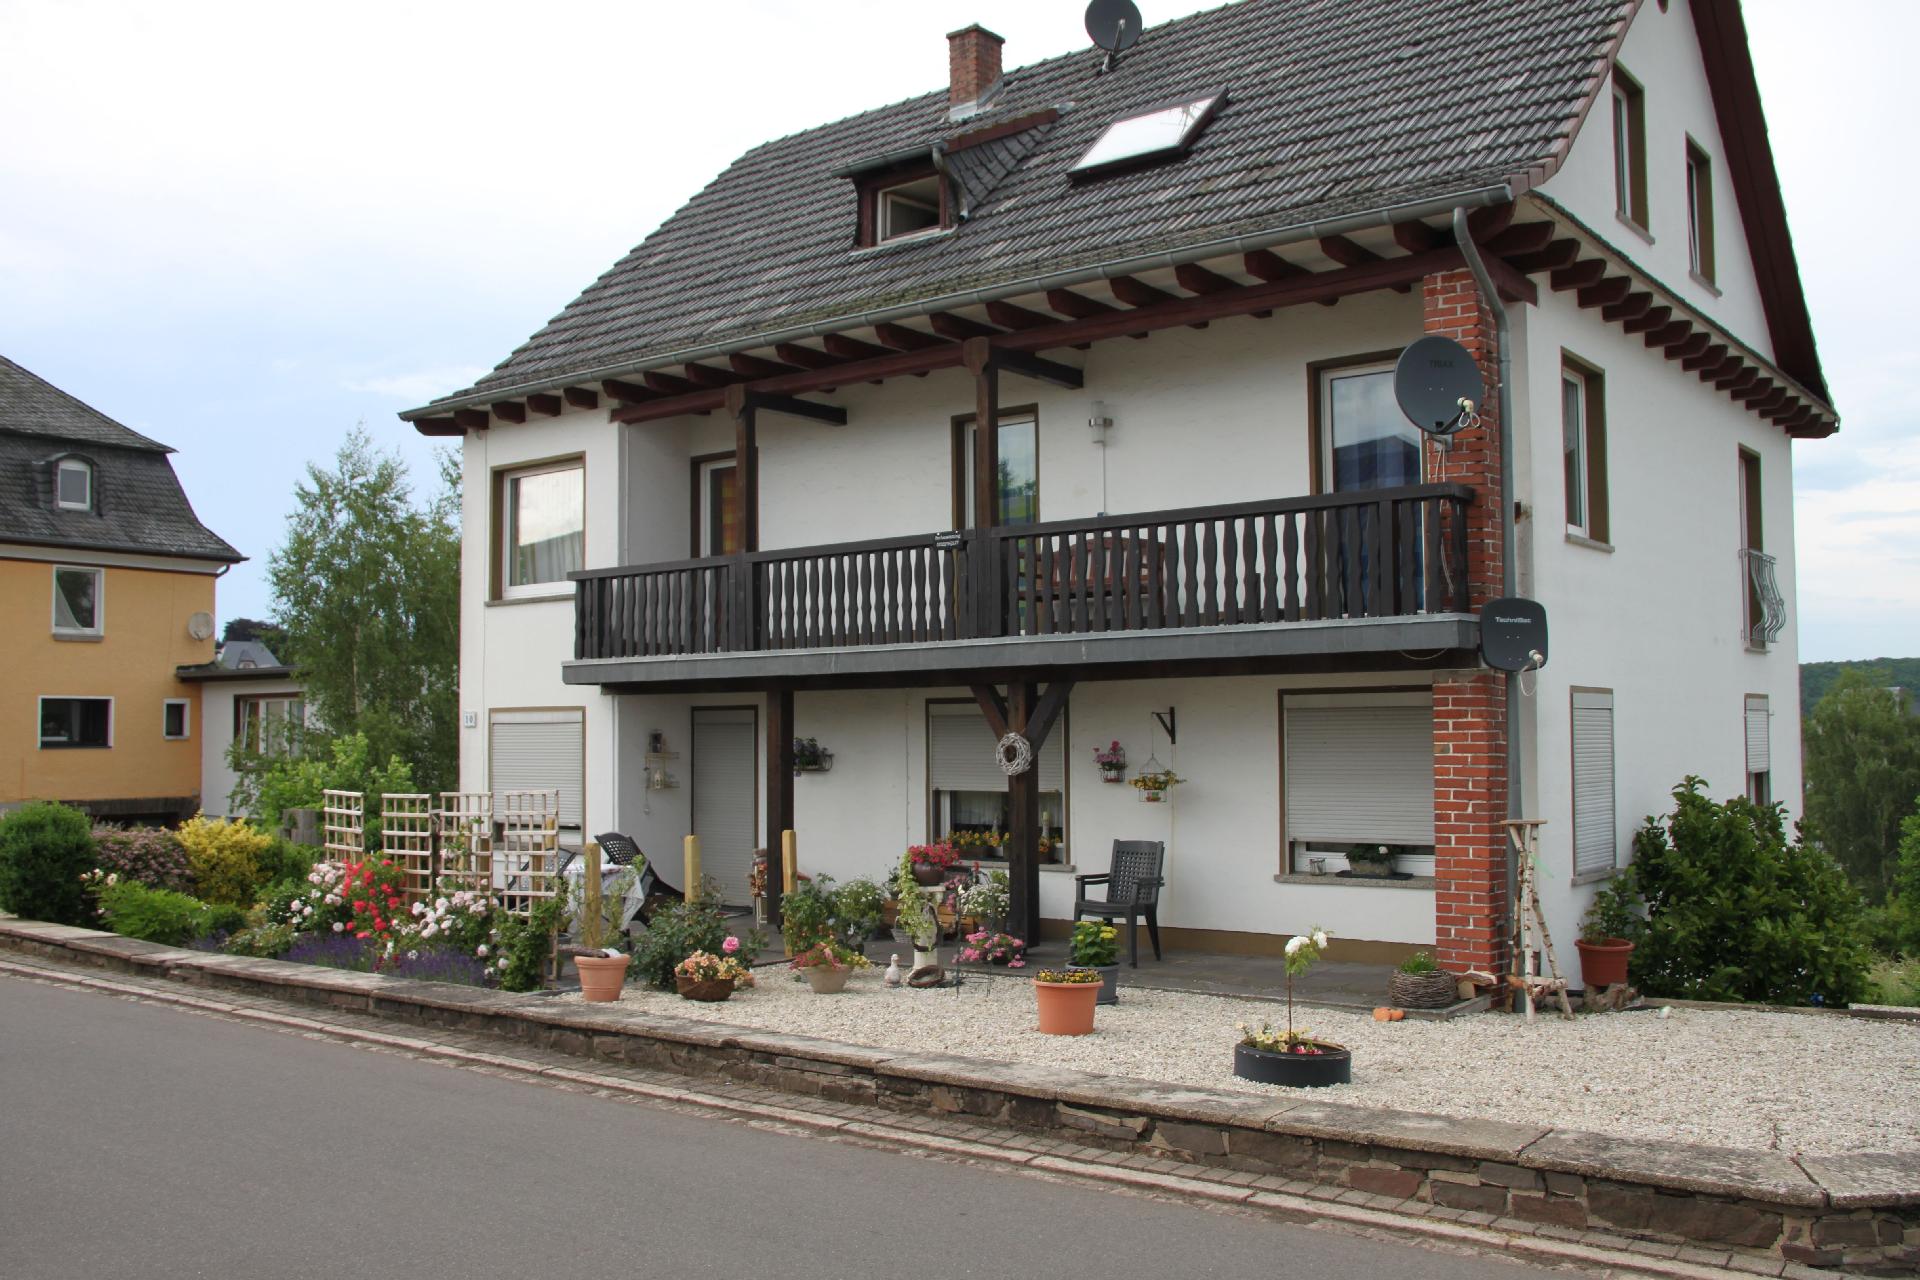 Ferienwohnung für 4 Personen ca. 77 m² i Ferienwohnung in der Eifel